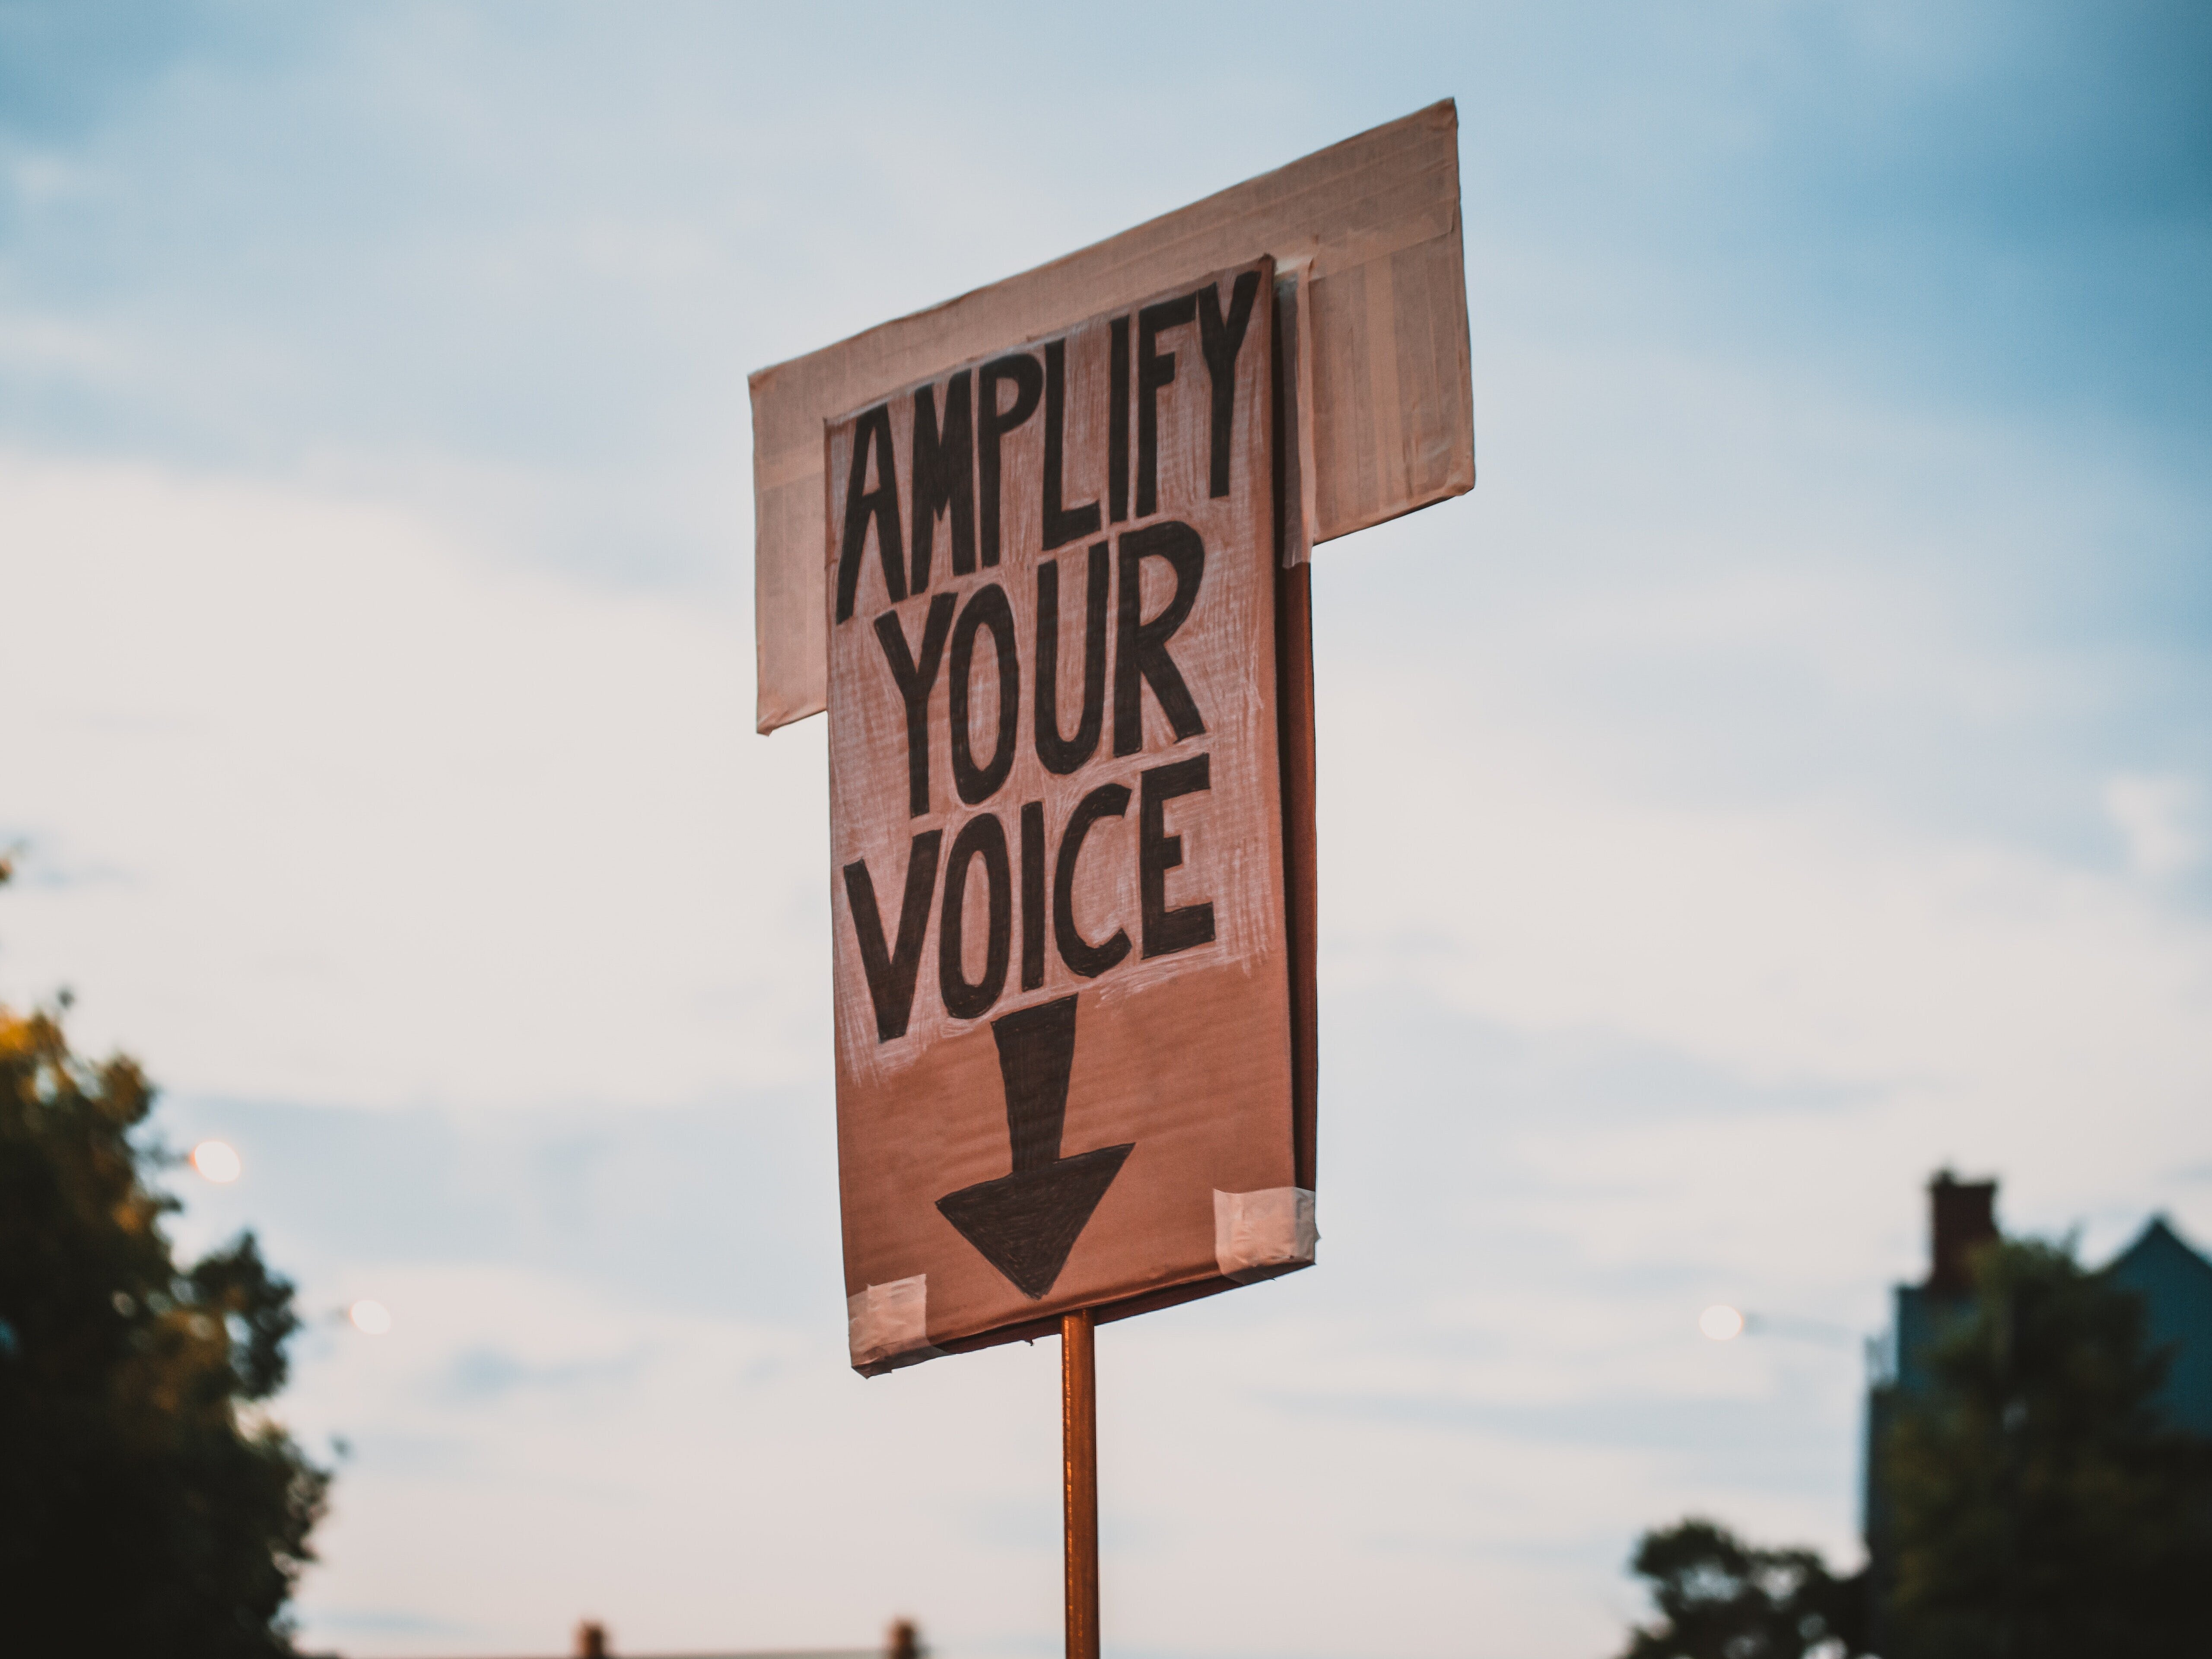 Ein Schild mit der Aufschrift "Amplify your voice" und einem Pfeil, der nach unten zeigt